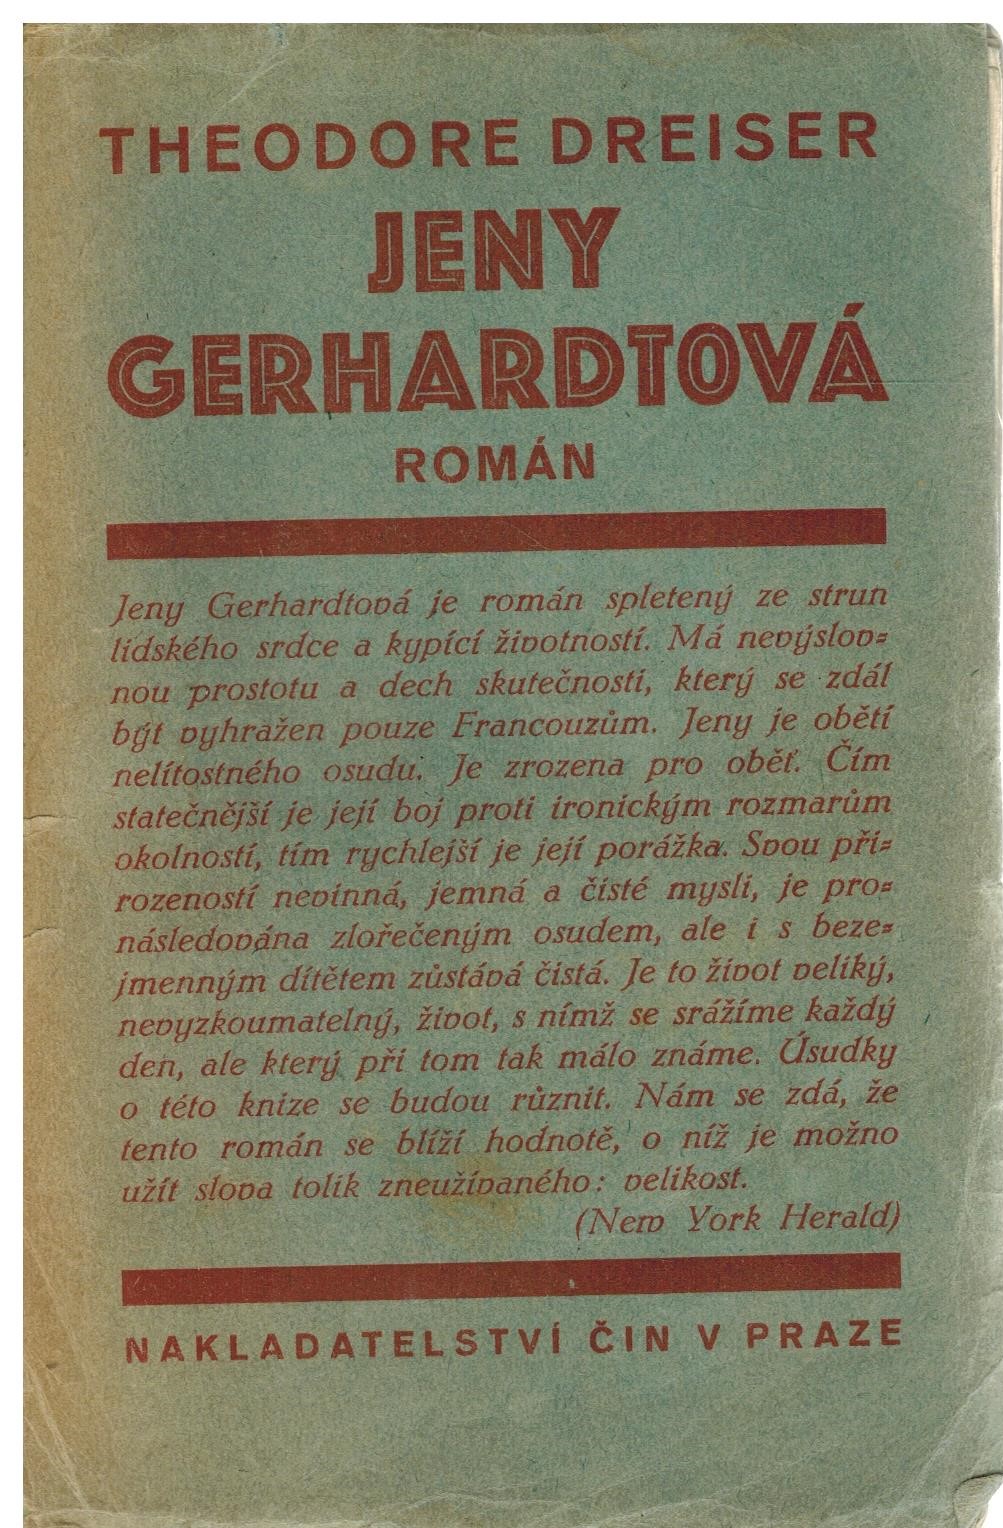 JENY GERHARDTOVÁ